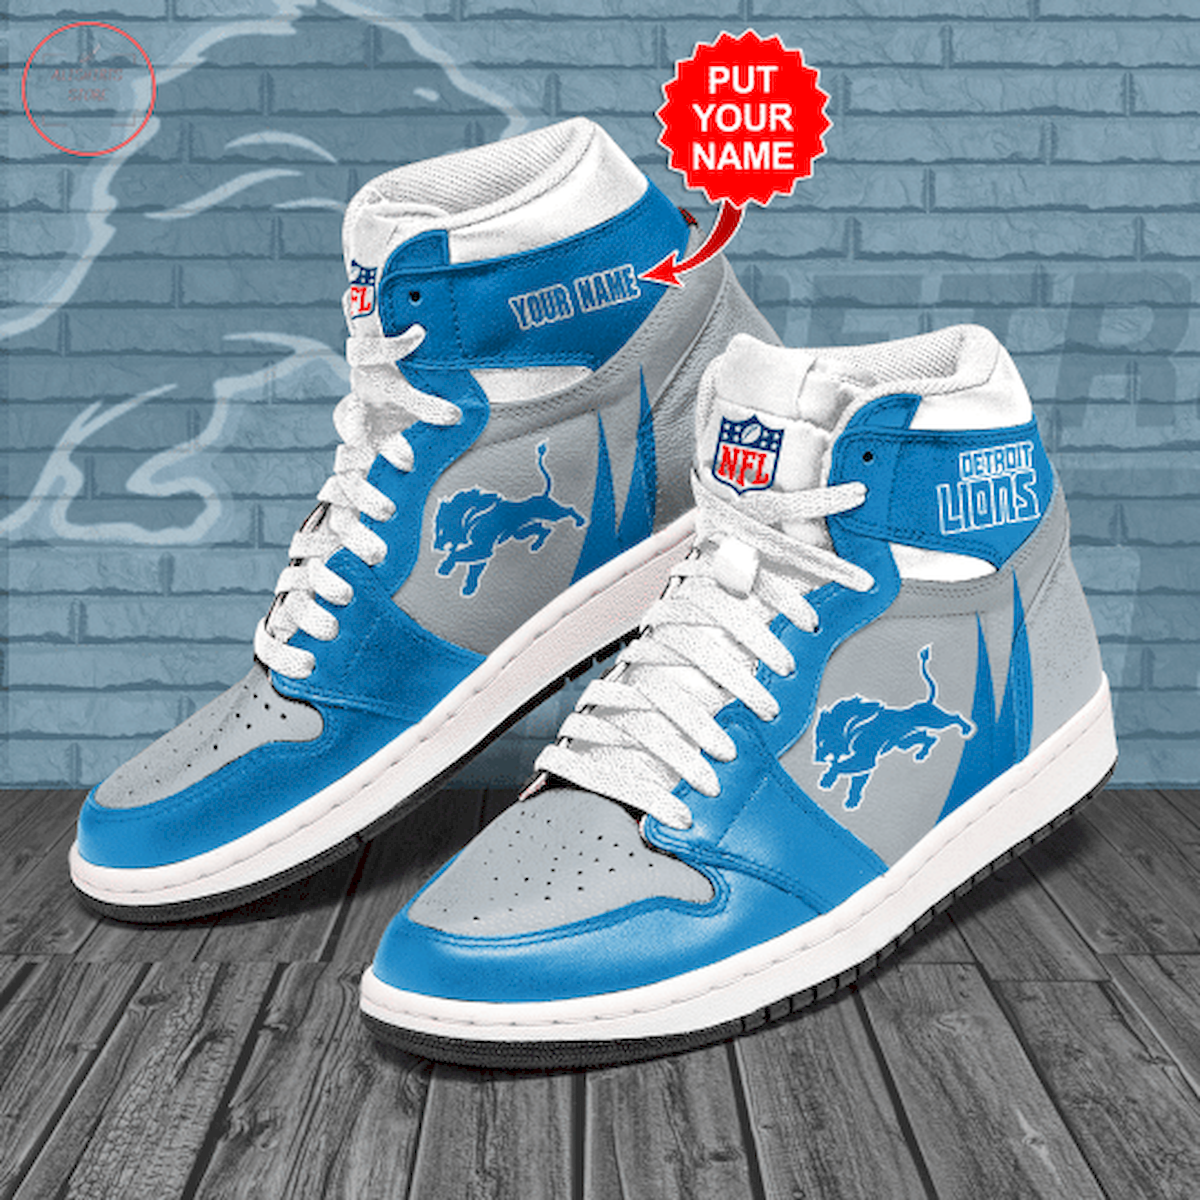 Detroit Lions NFL Custom High Air Jordan 1 Sneakers